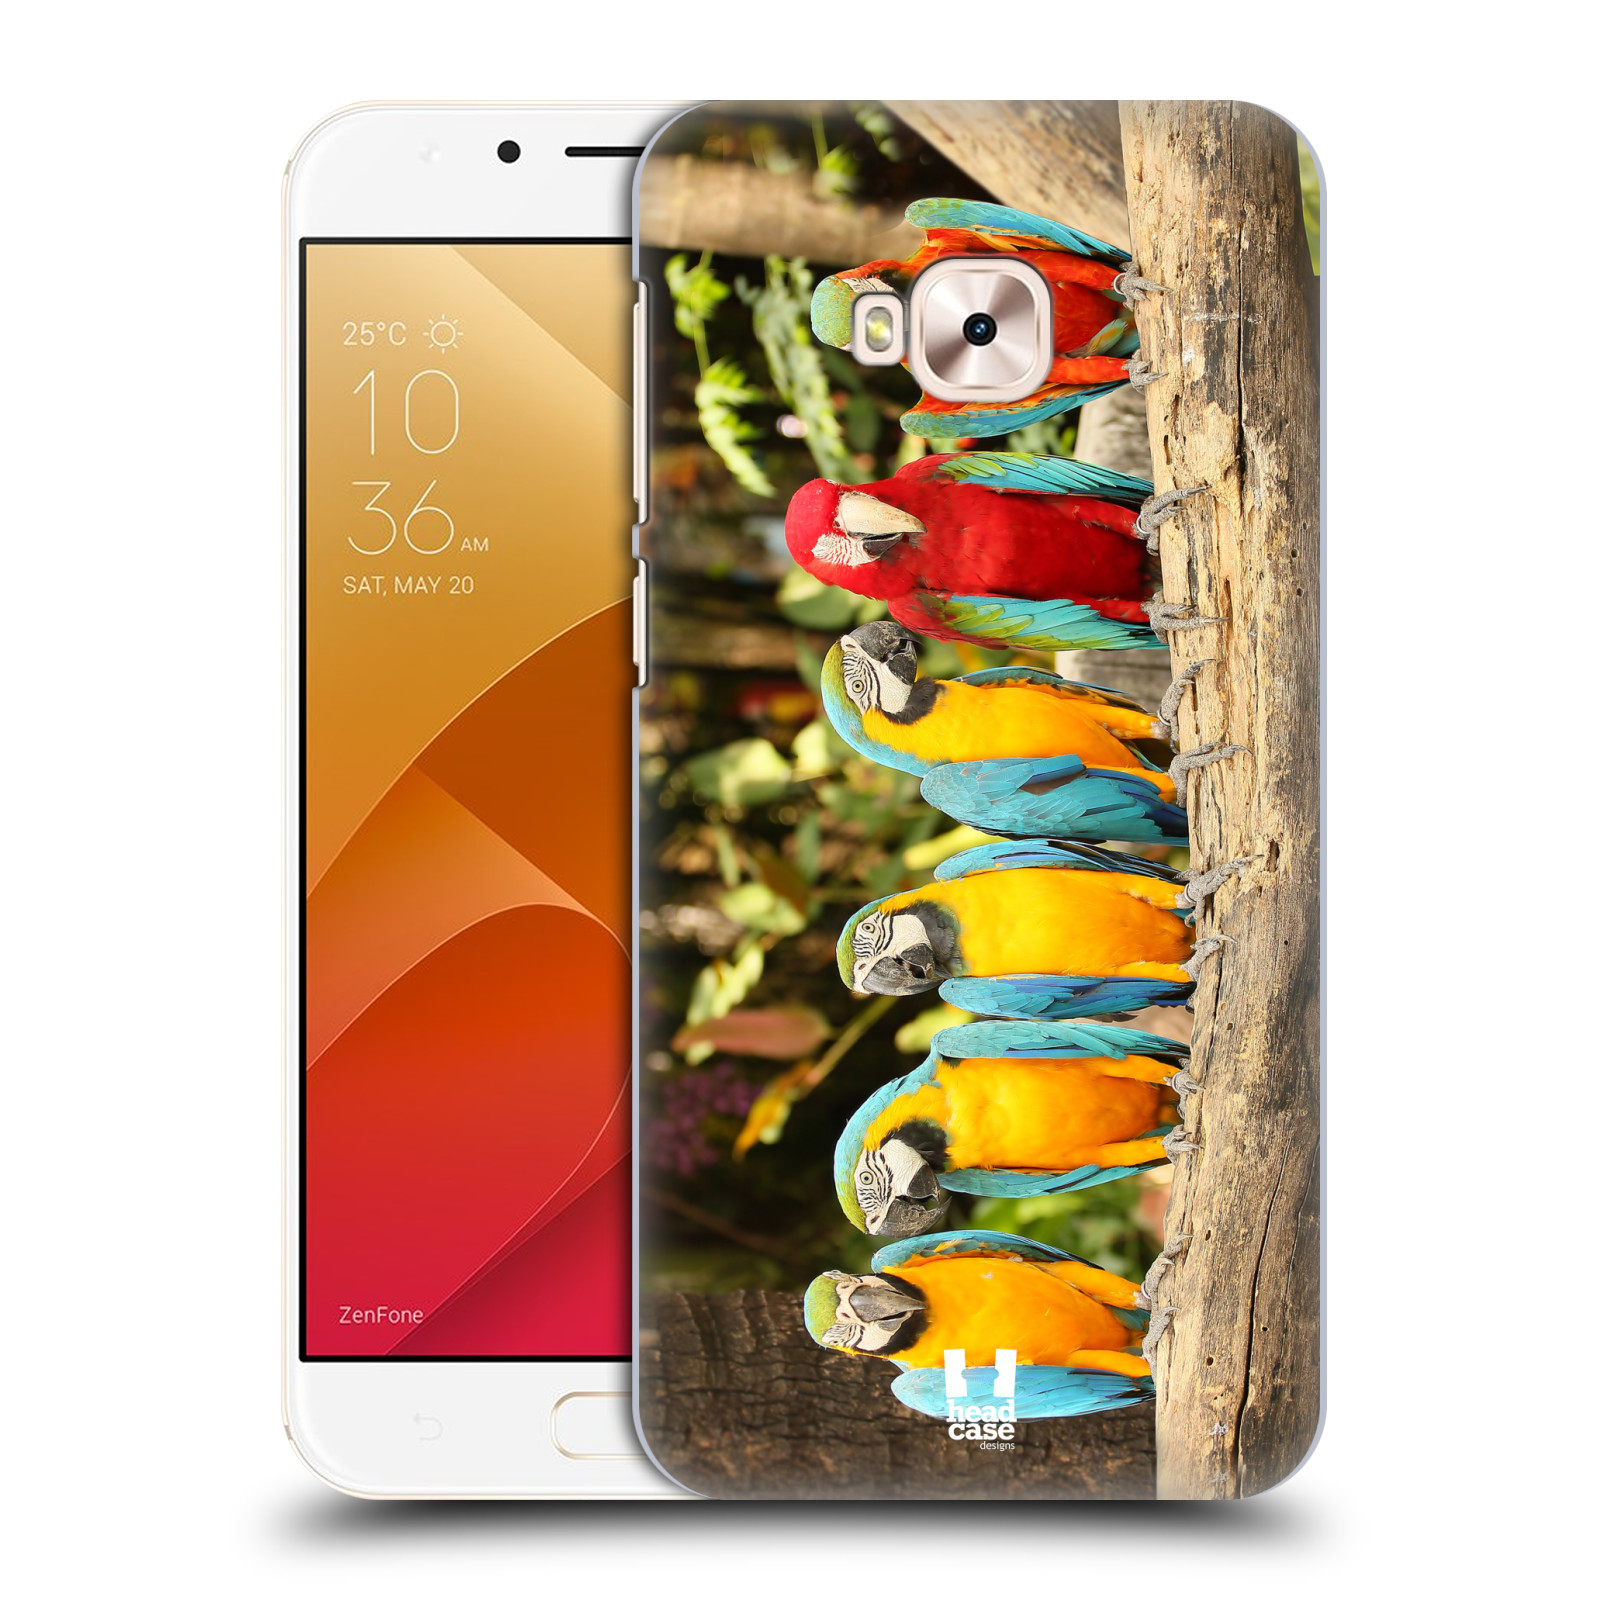 HEAD CASE plastový obal na mobil Asus Zenfone 4 Selfie Pro ZD552KL vzor slavná zvířata foto papoušci